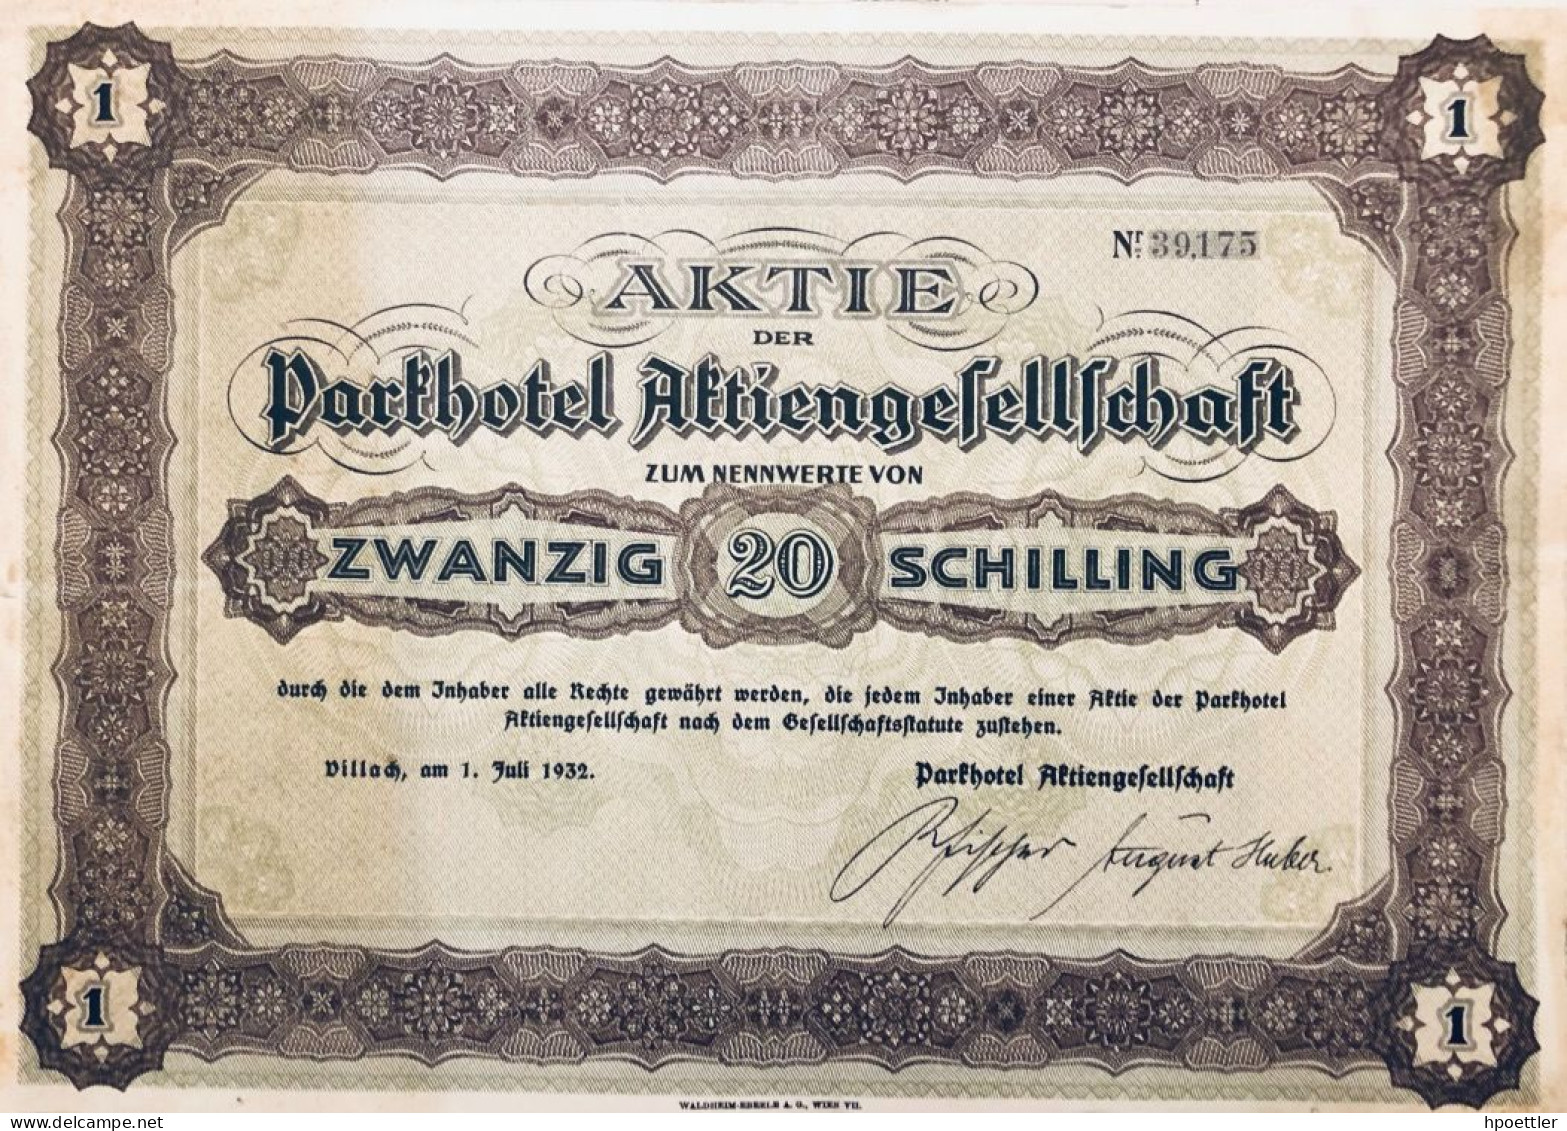 Autriche: Villach 1932: Un Action: Parkhotel Aktiengesellschaft 20 Schilling - Tourismus